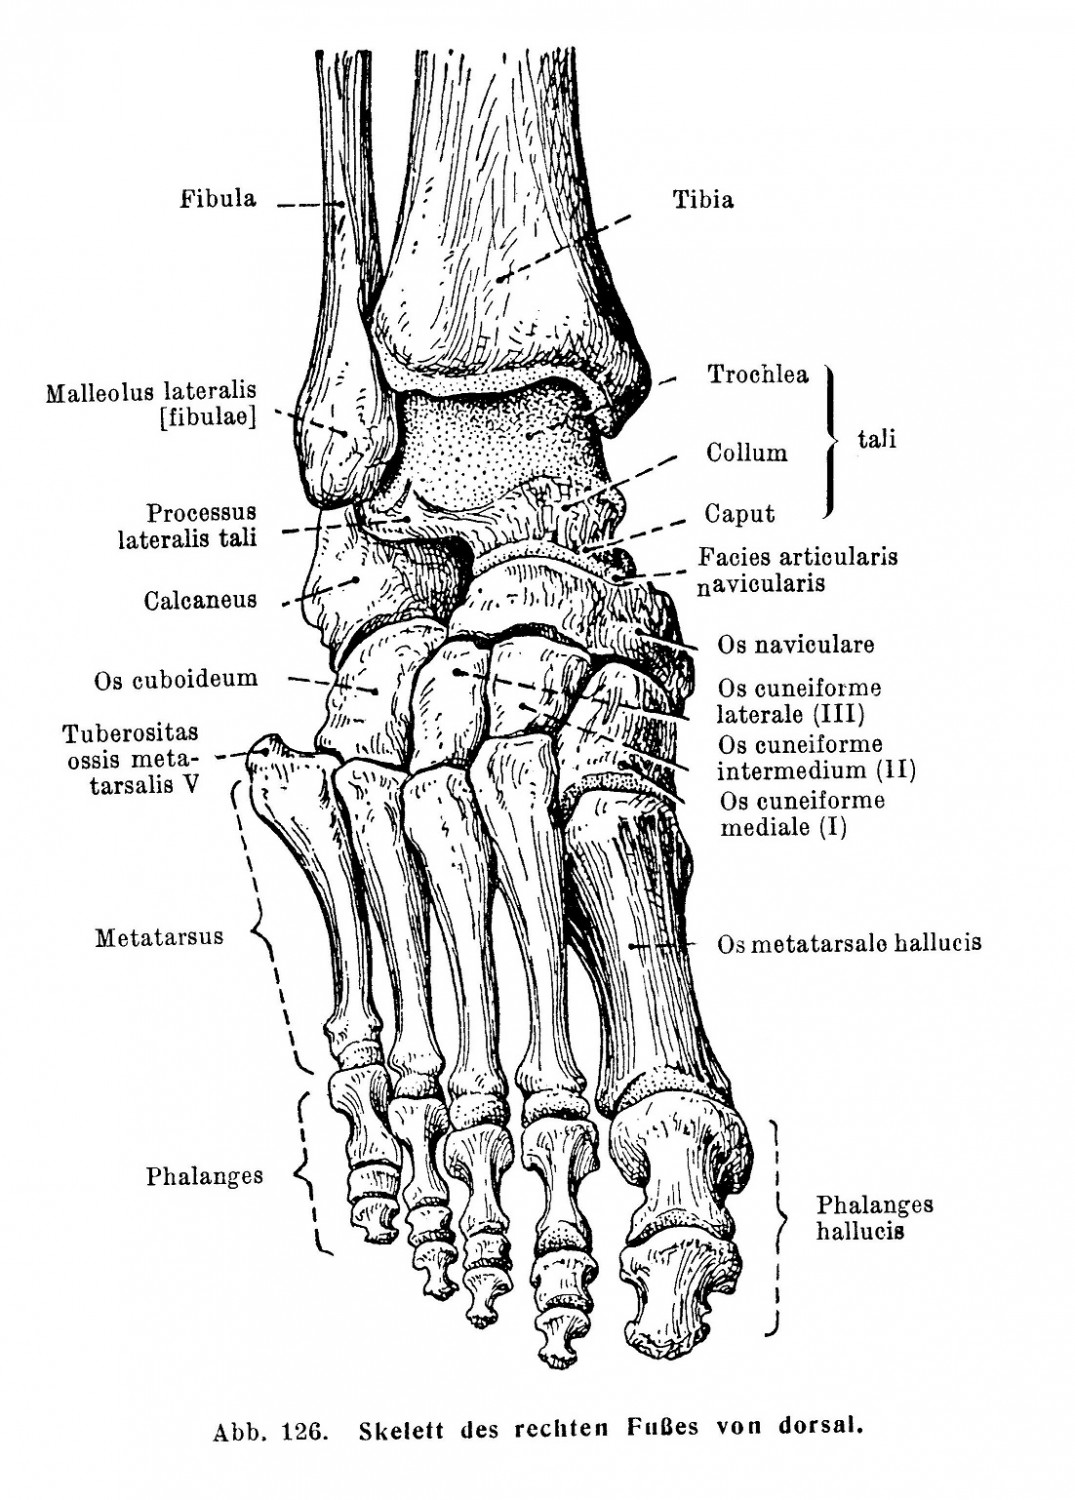 Skelett des rechten Fußes von dorsal